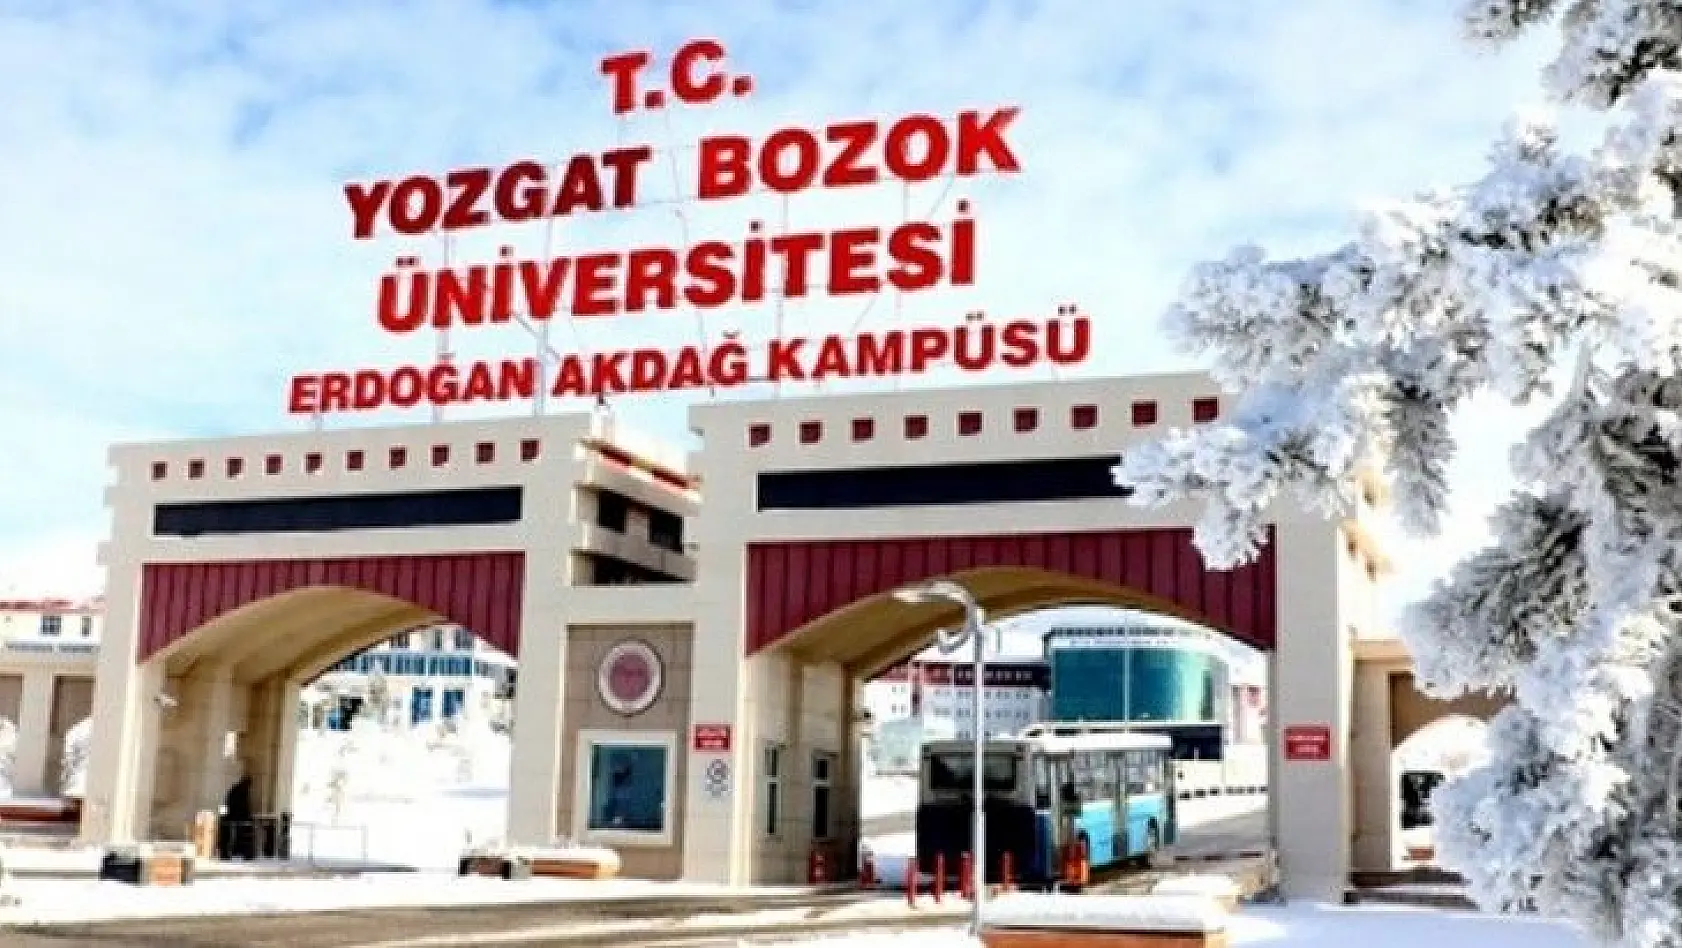 Yozgat Bozok Üniversitesi 5 Öğretim Üyesi alıyor